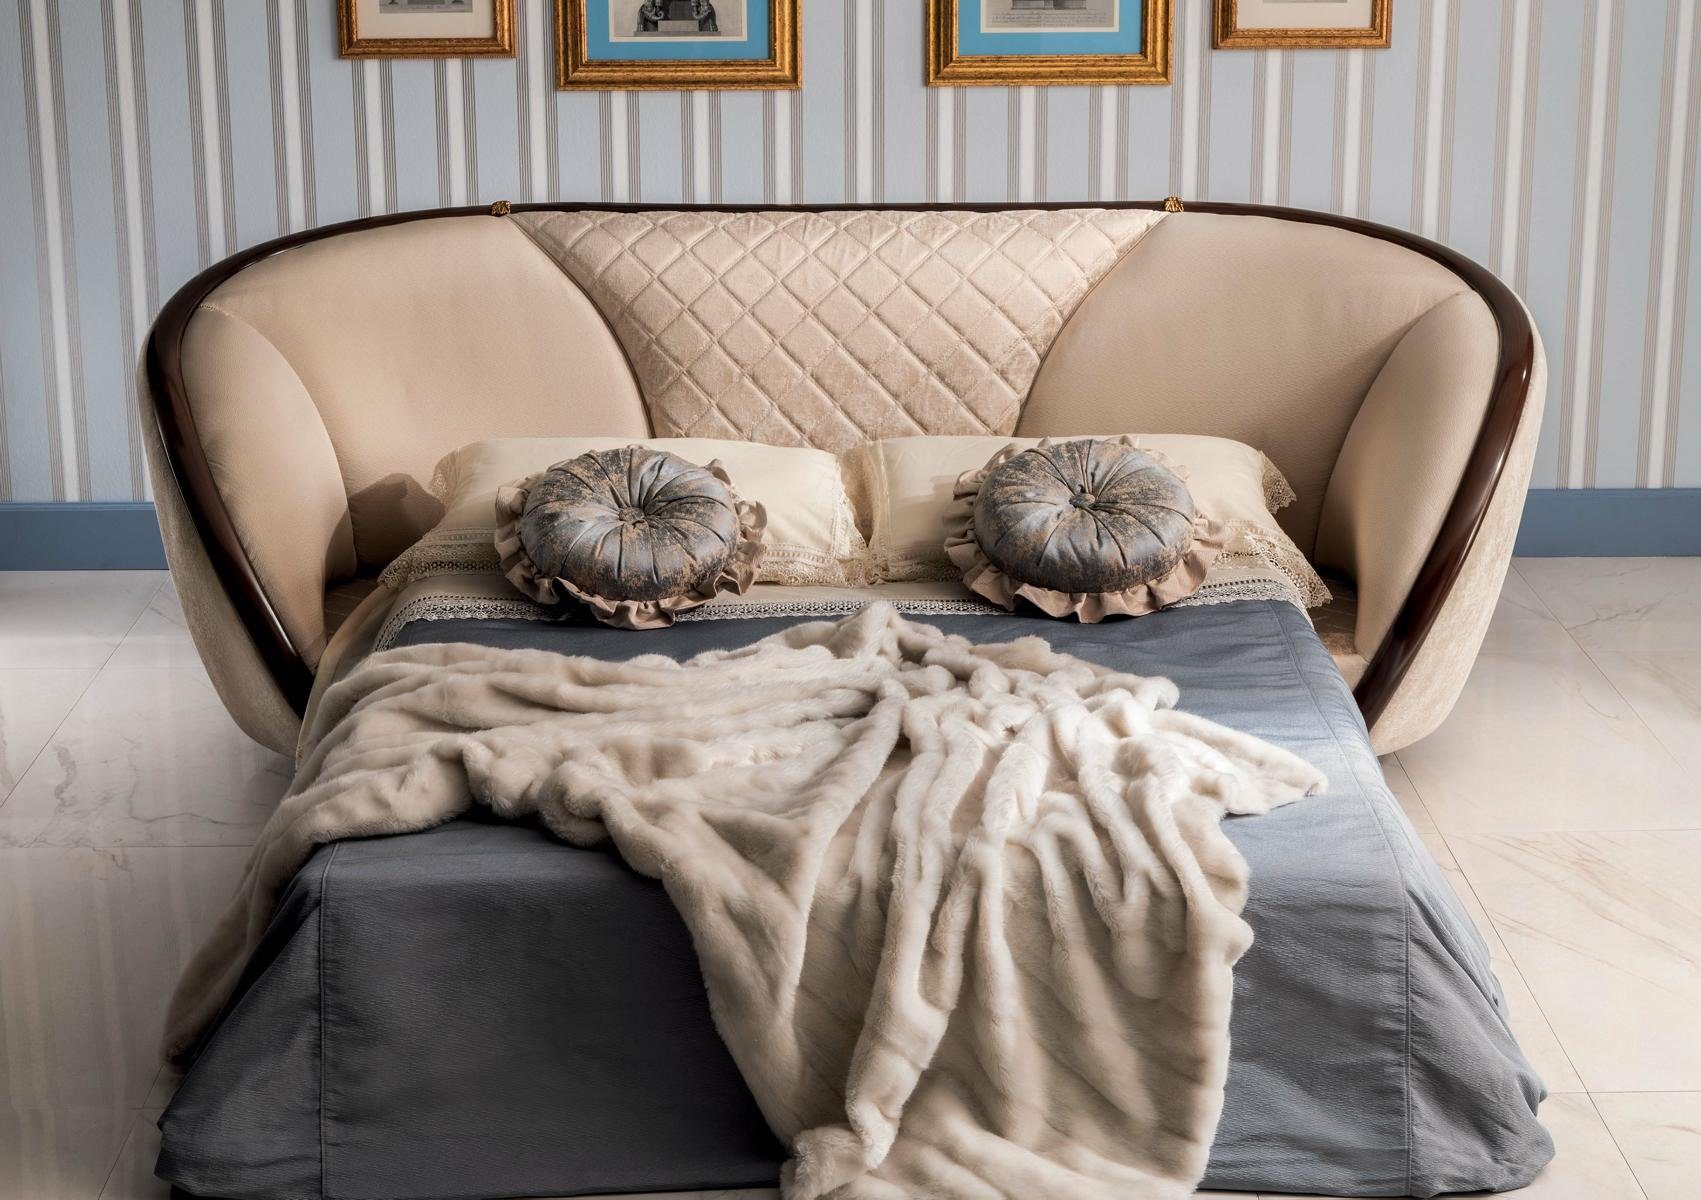 JVmoebel Wohnzimmer-Set, Luxus Klasse Sofagarnitur arredoclassic™ Möbel 2+1 Couch Italienische Neu Sofa